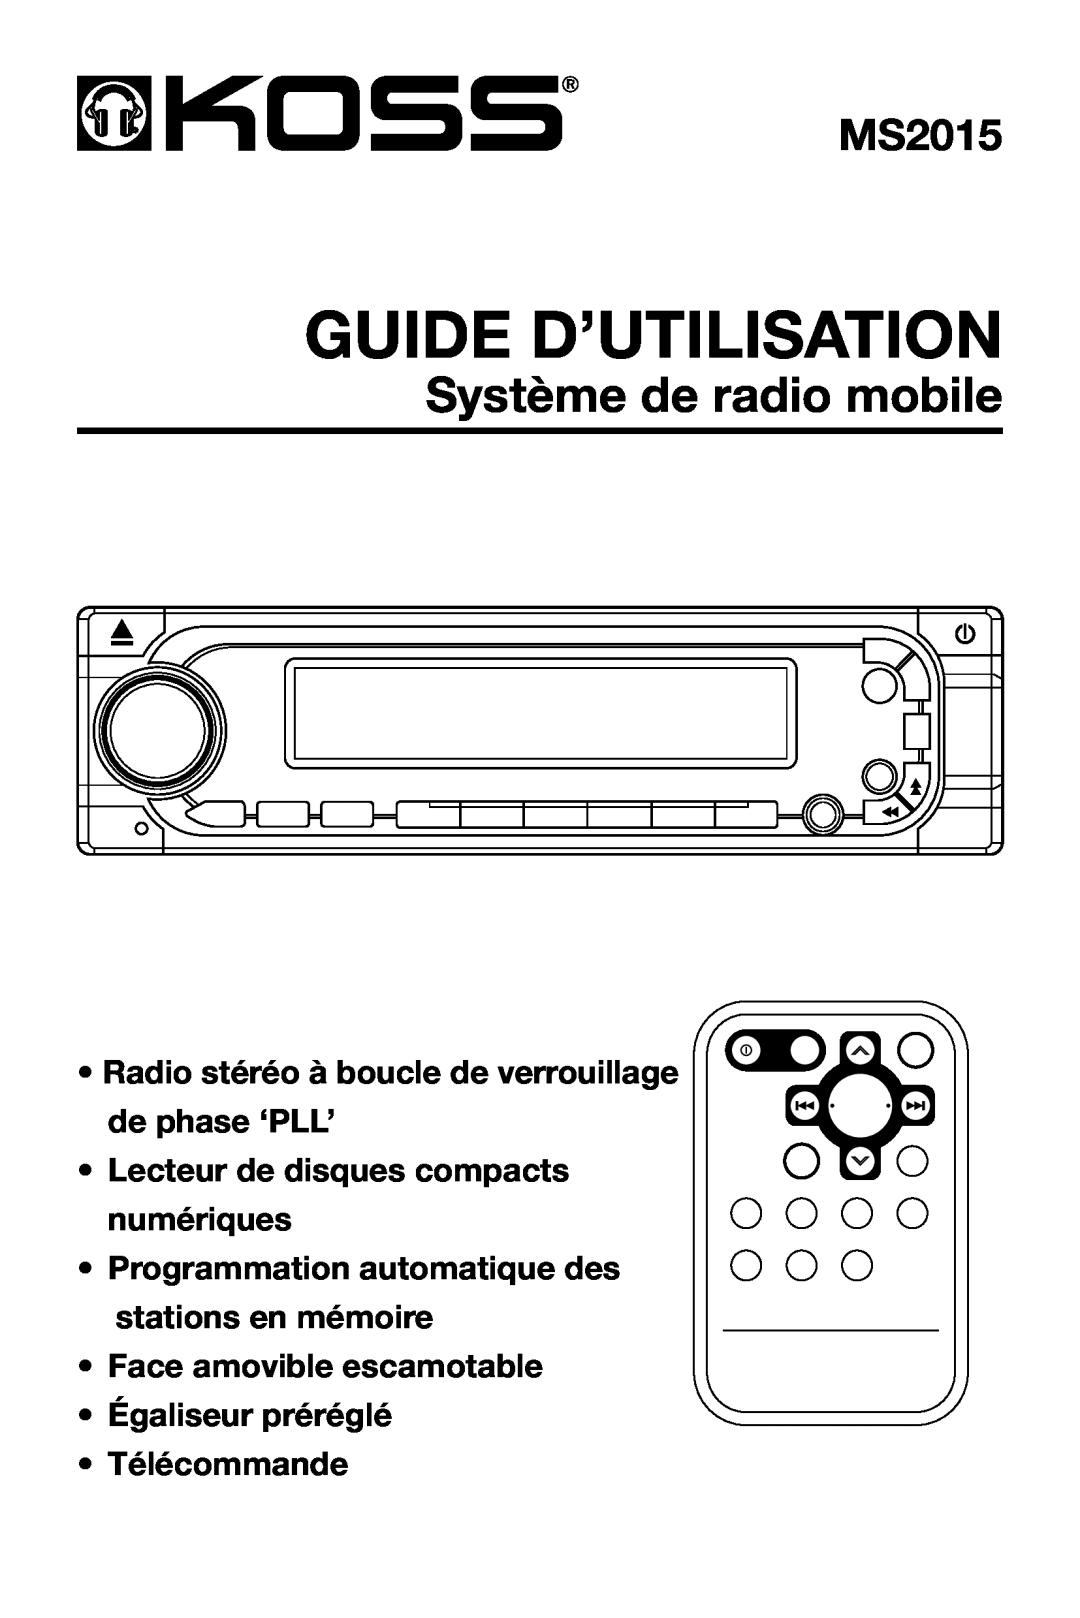 StreamLight MS2015 Guide D’Utilisation, Système de radio mobile, Lecteur de disques compacts numériques, Télécommande 